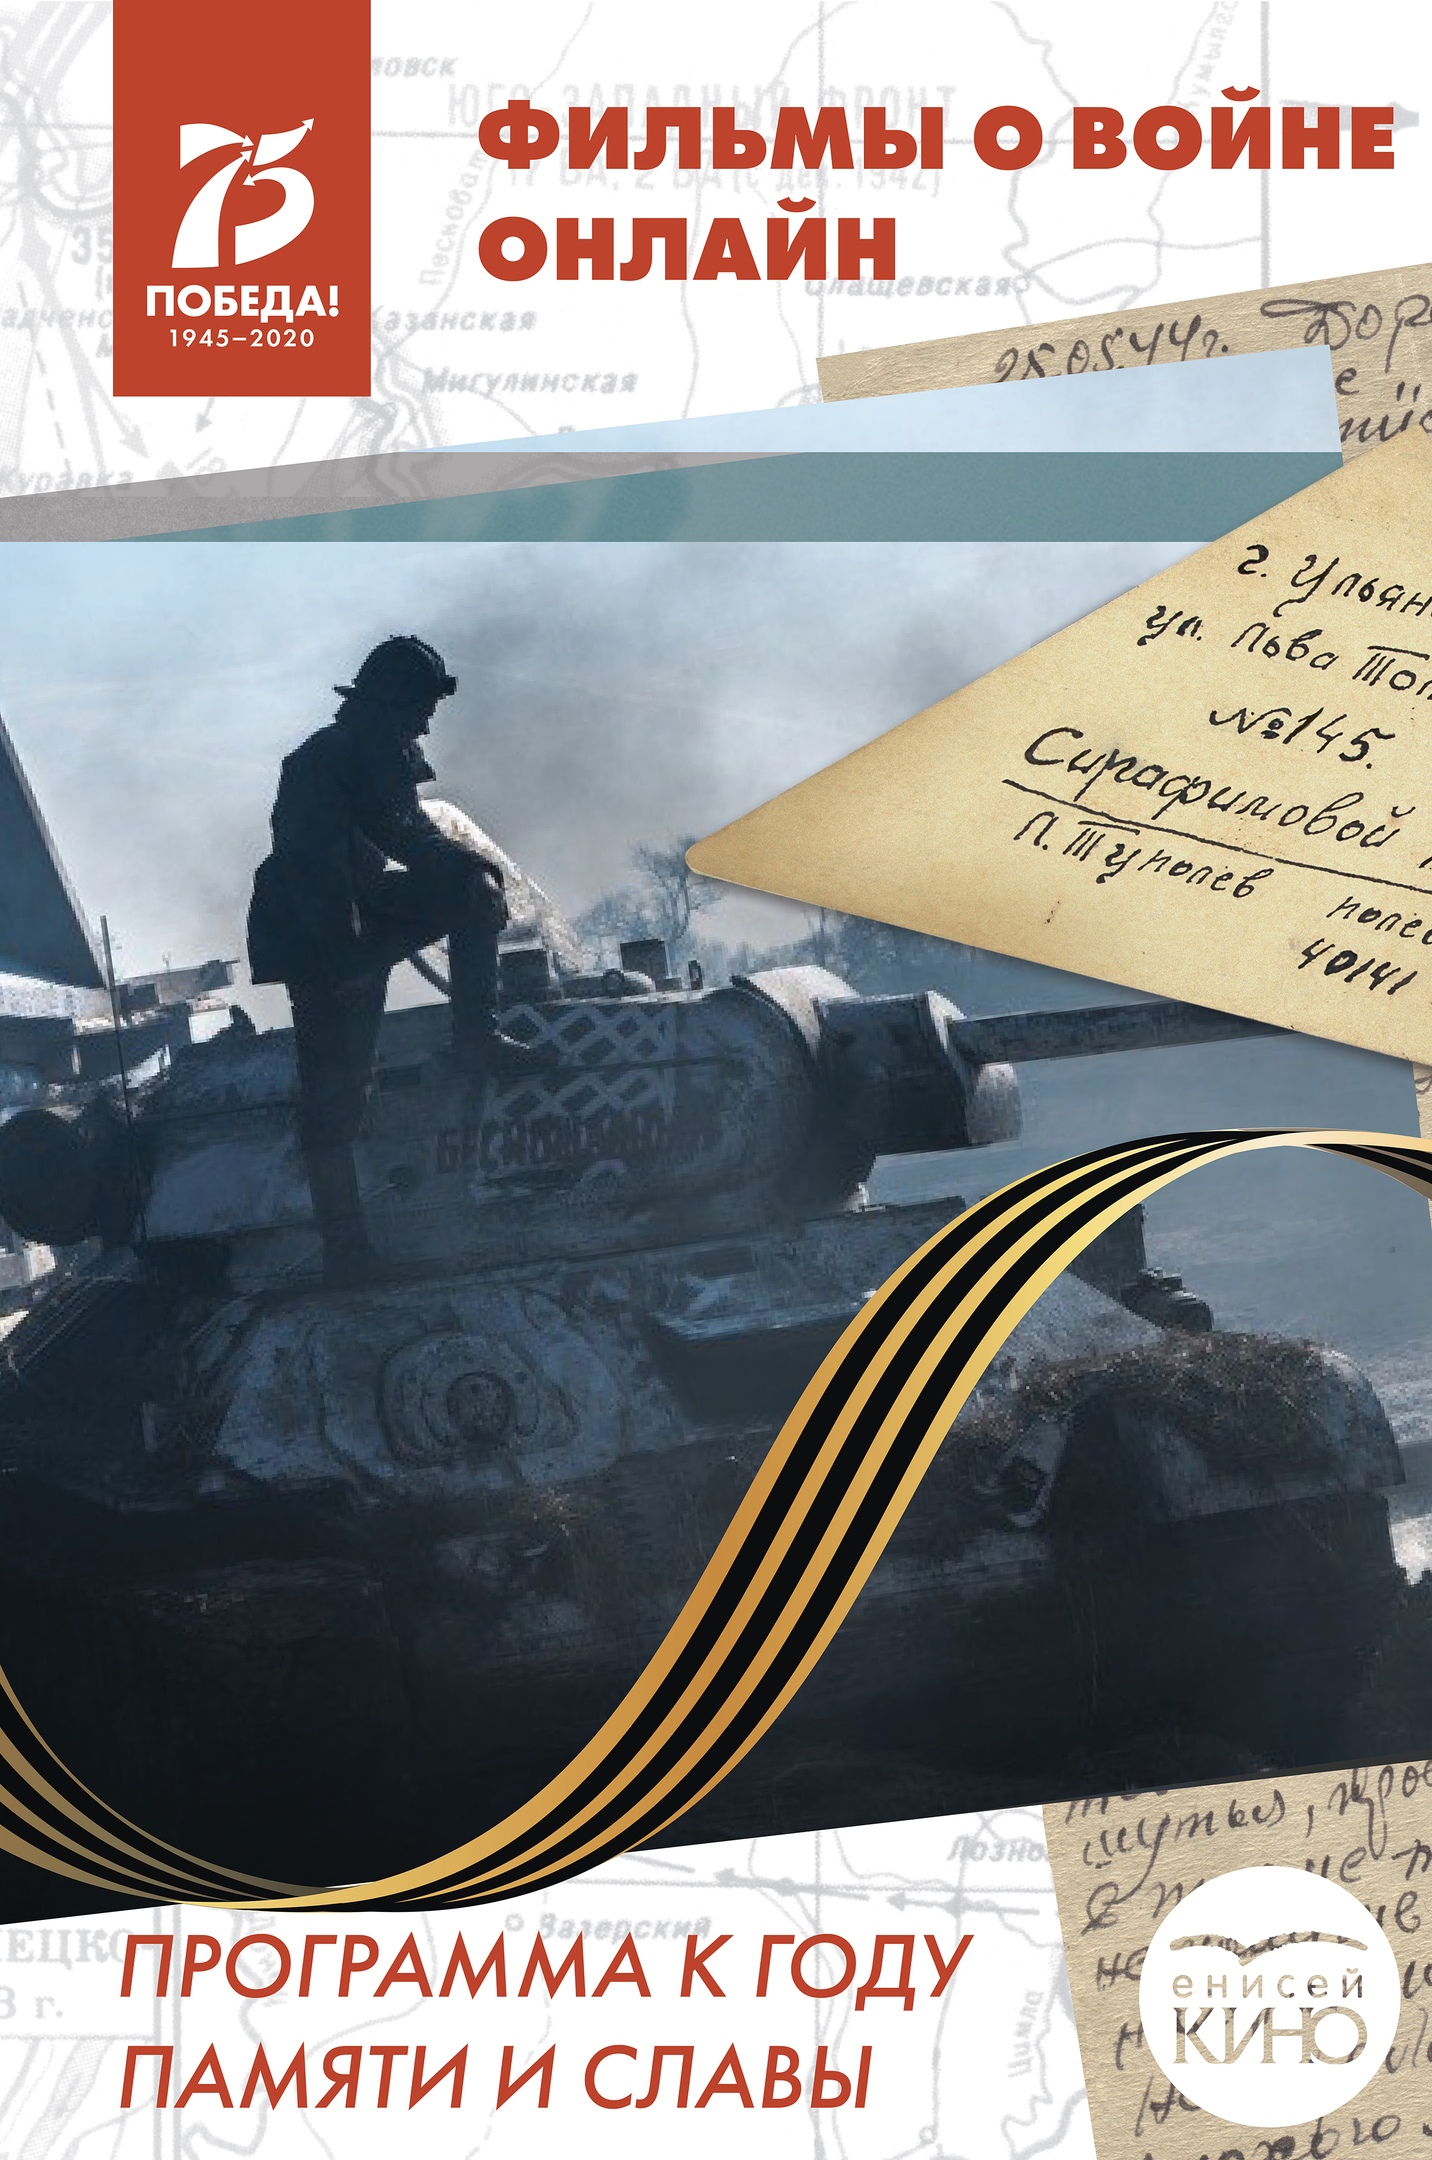 Онлайн-кинопрограмма к празднованию Года памяти и славы и 75-летия Победы в Великой Отечественной войне